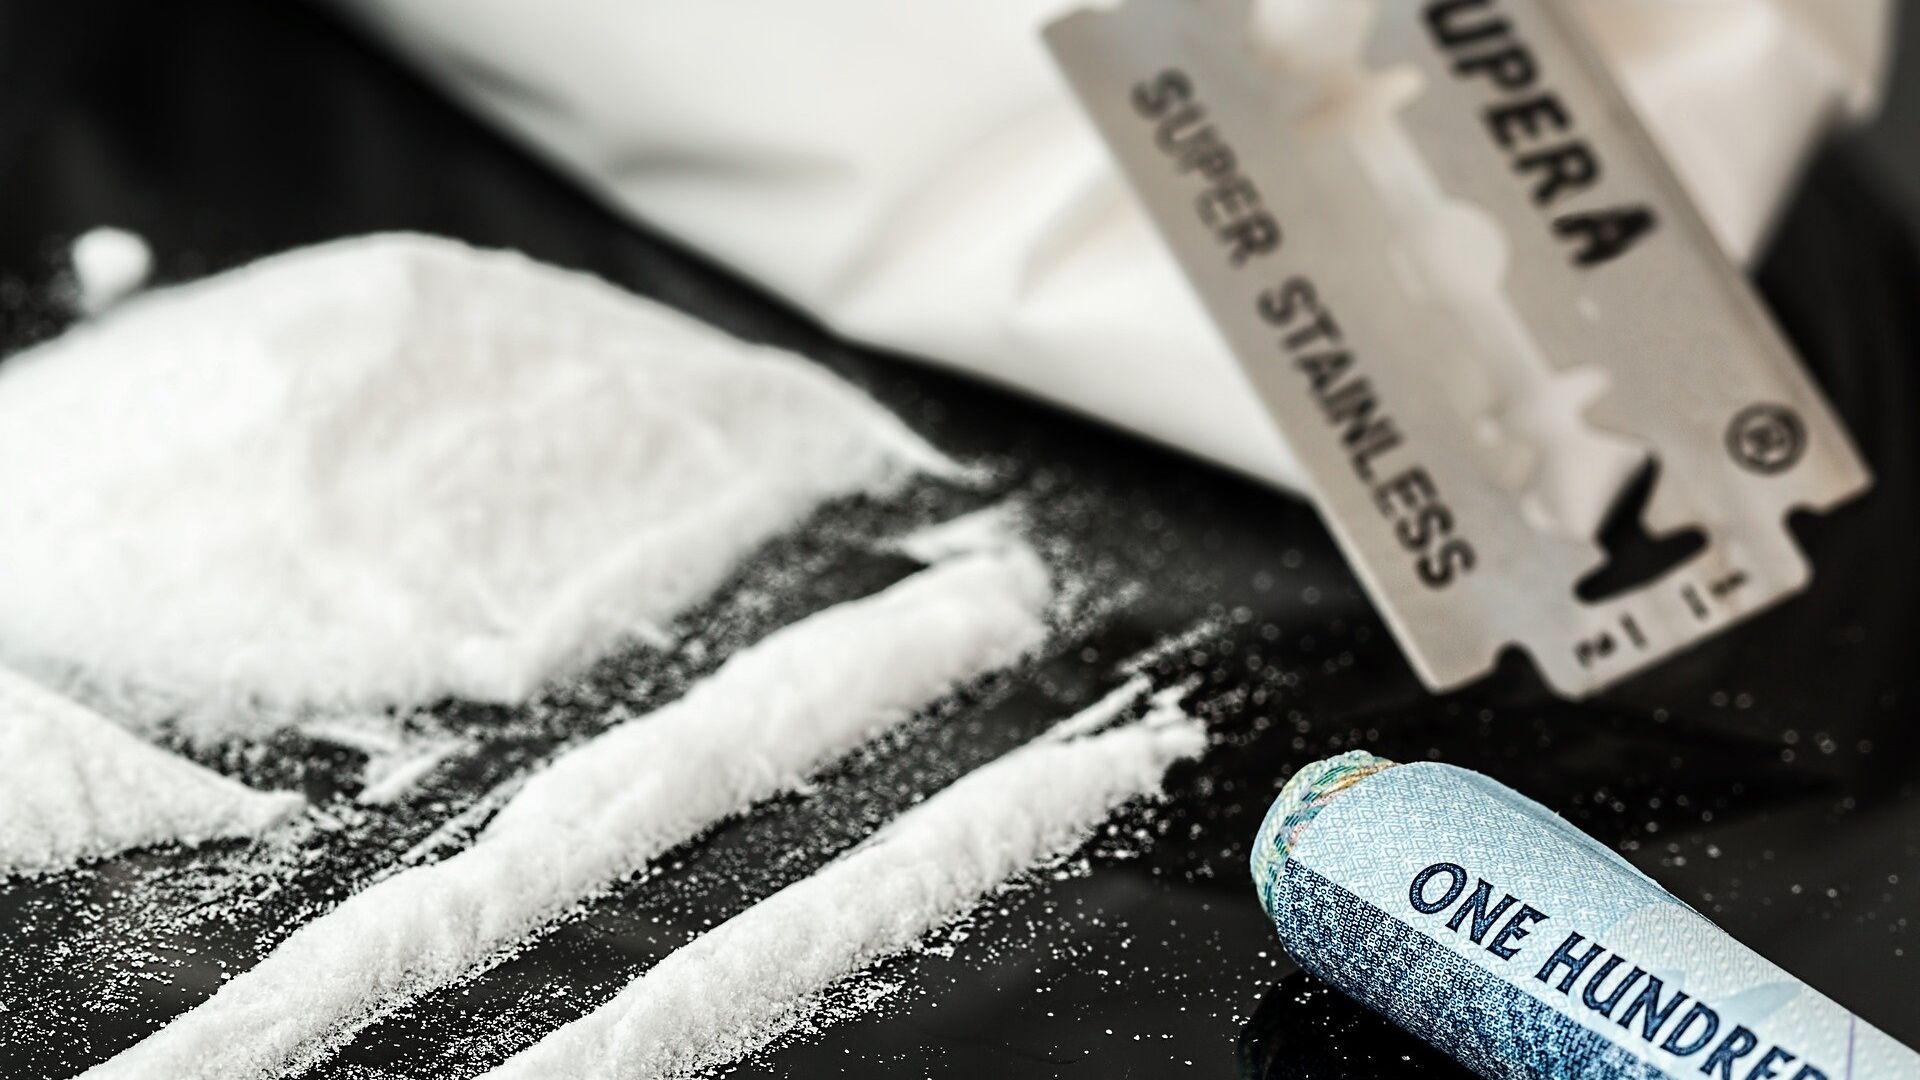 Saisie de cocaïne d’une valeur de 100 millions de dollars au Liberia